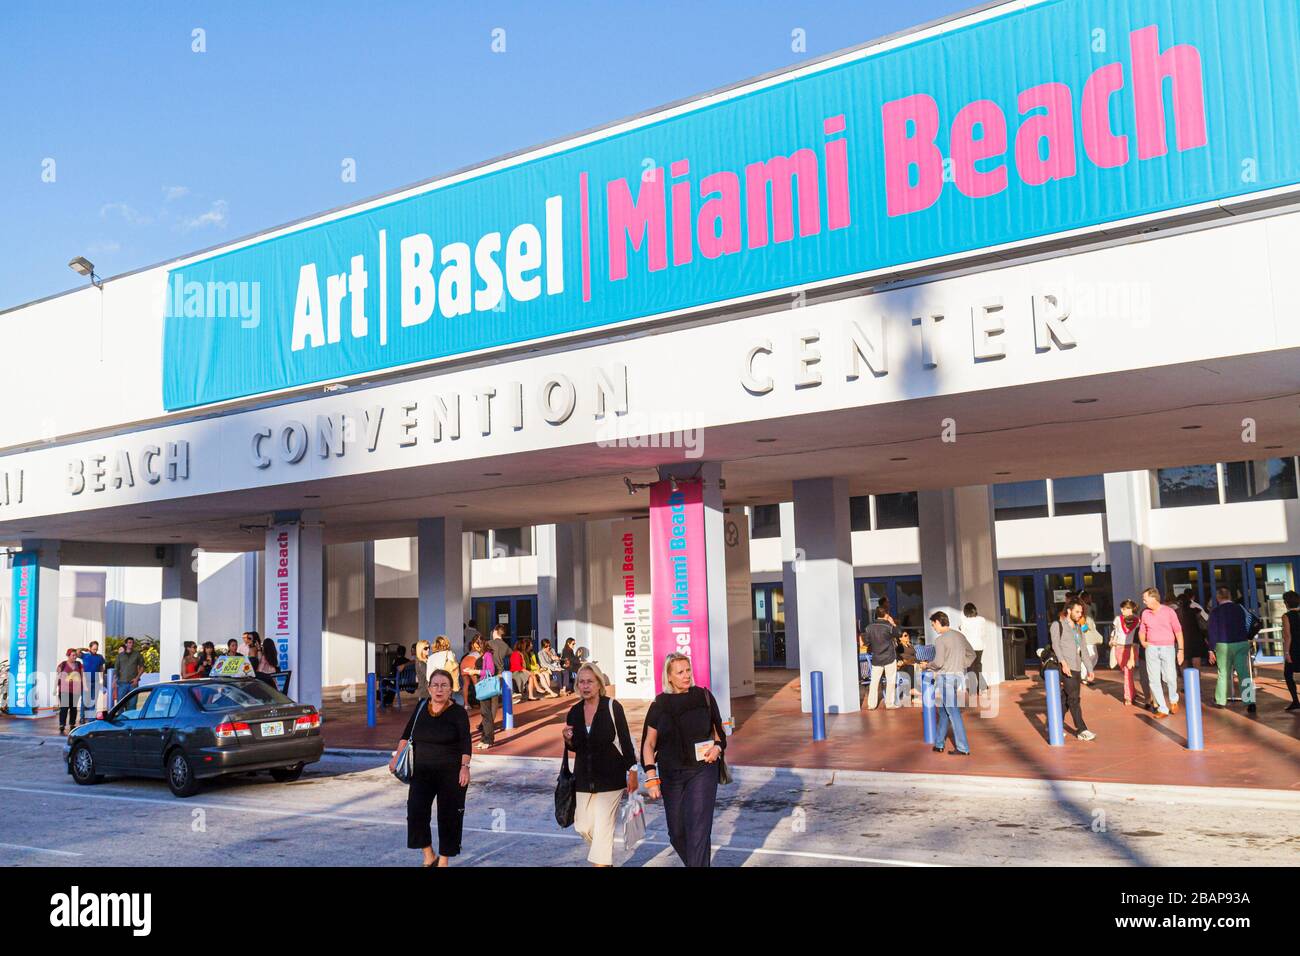 Miami Beach Florida,Miami Beach Convention Center,Centro,Art Basel,annuale,fiera,gallerie,opere d'arte,ingresso,fronte,insegna,esterno,fronte,ingresso,w Foto Stock